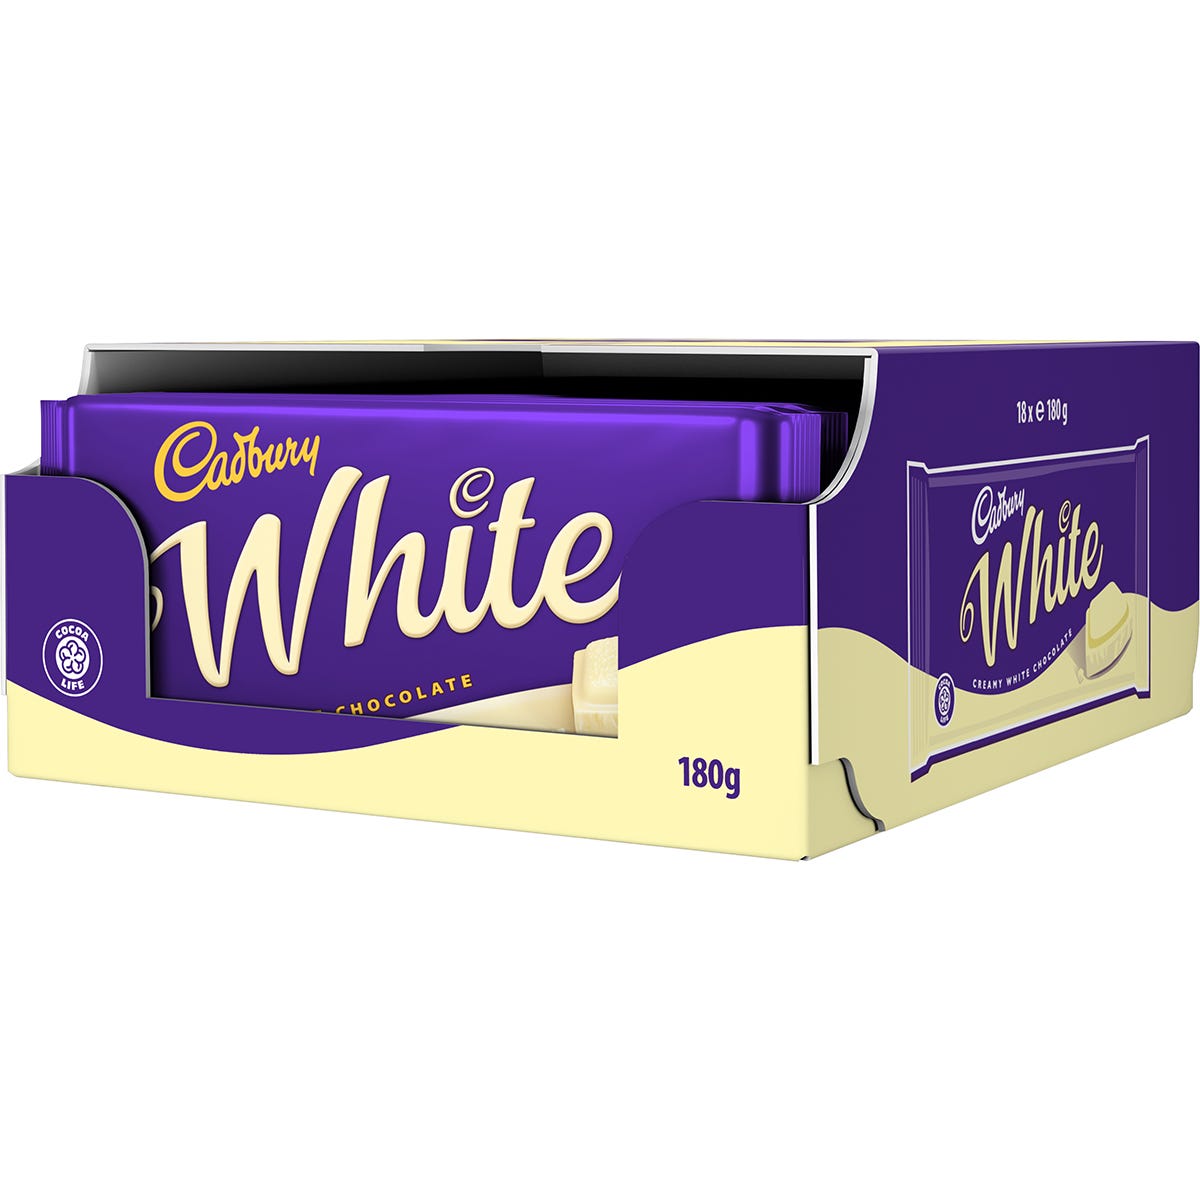 Picture of Cadbury White Chocolate Bar 180g (Box of 18)